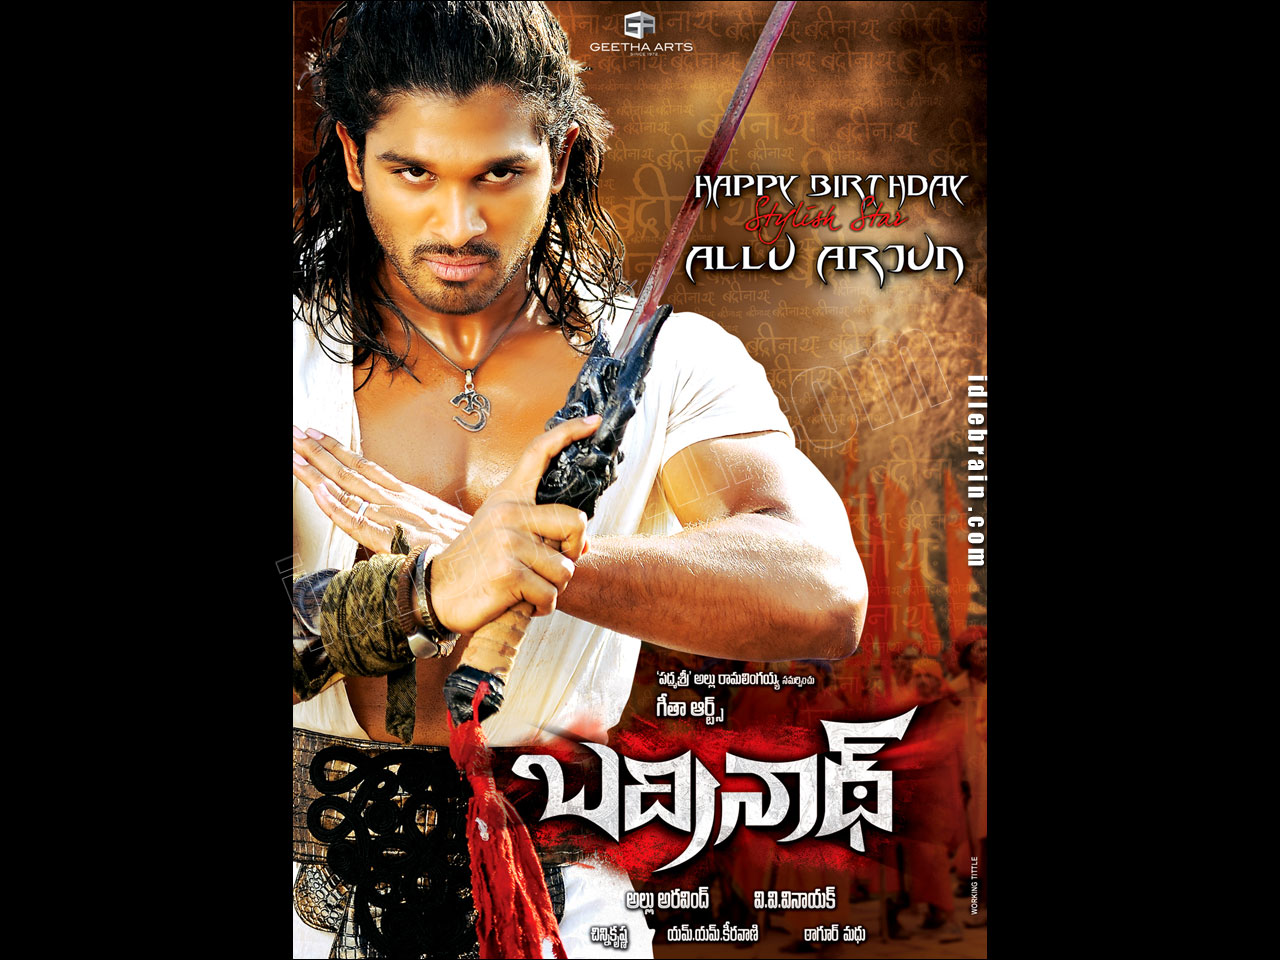 Badrinath - Telugu film wallpapers - Telugu cinema -Allu Arjun